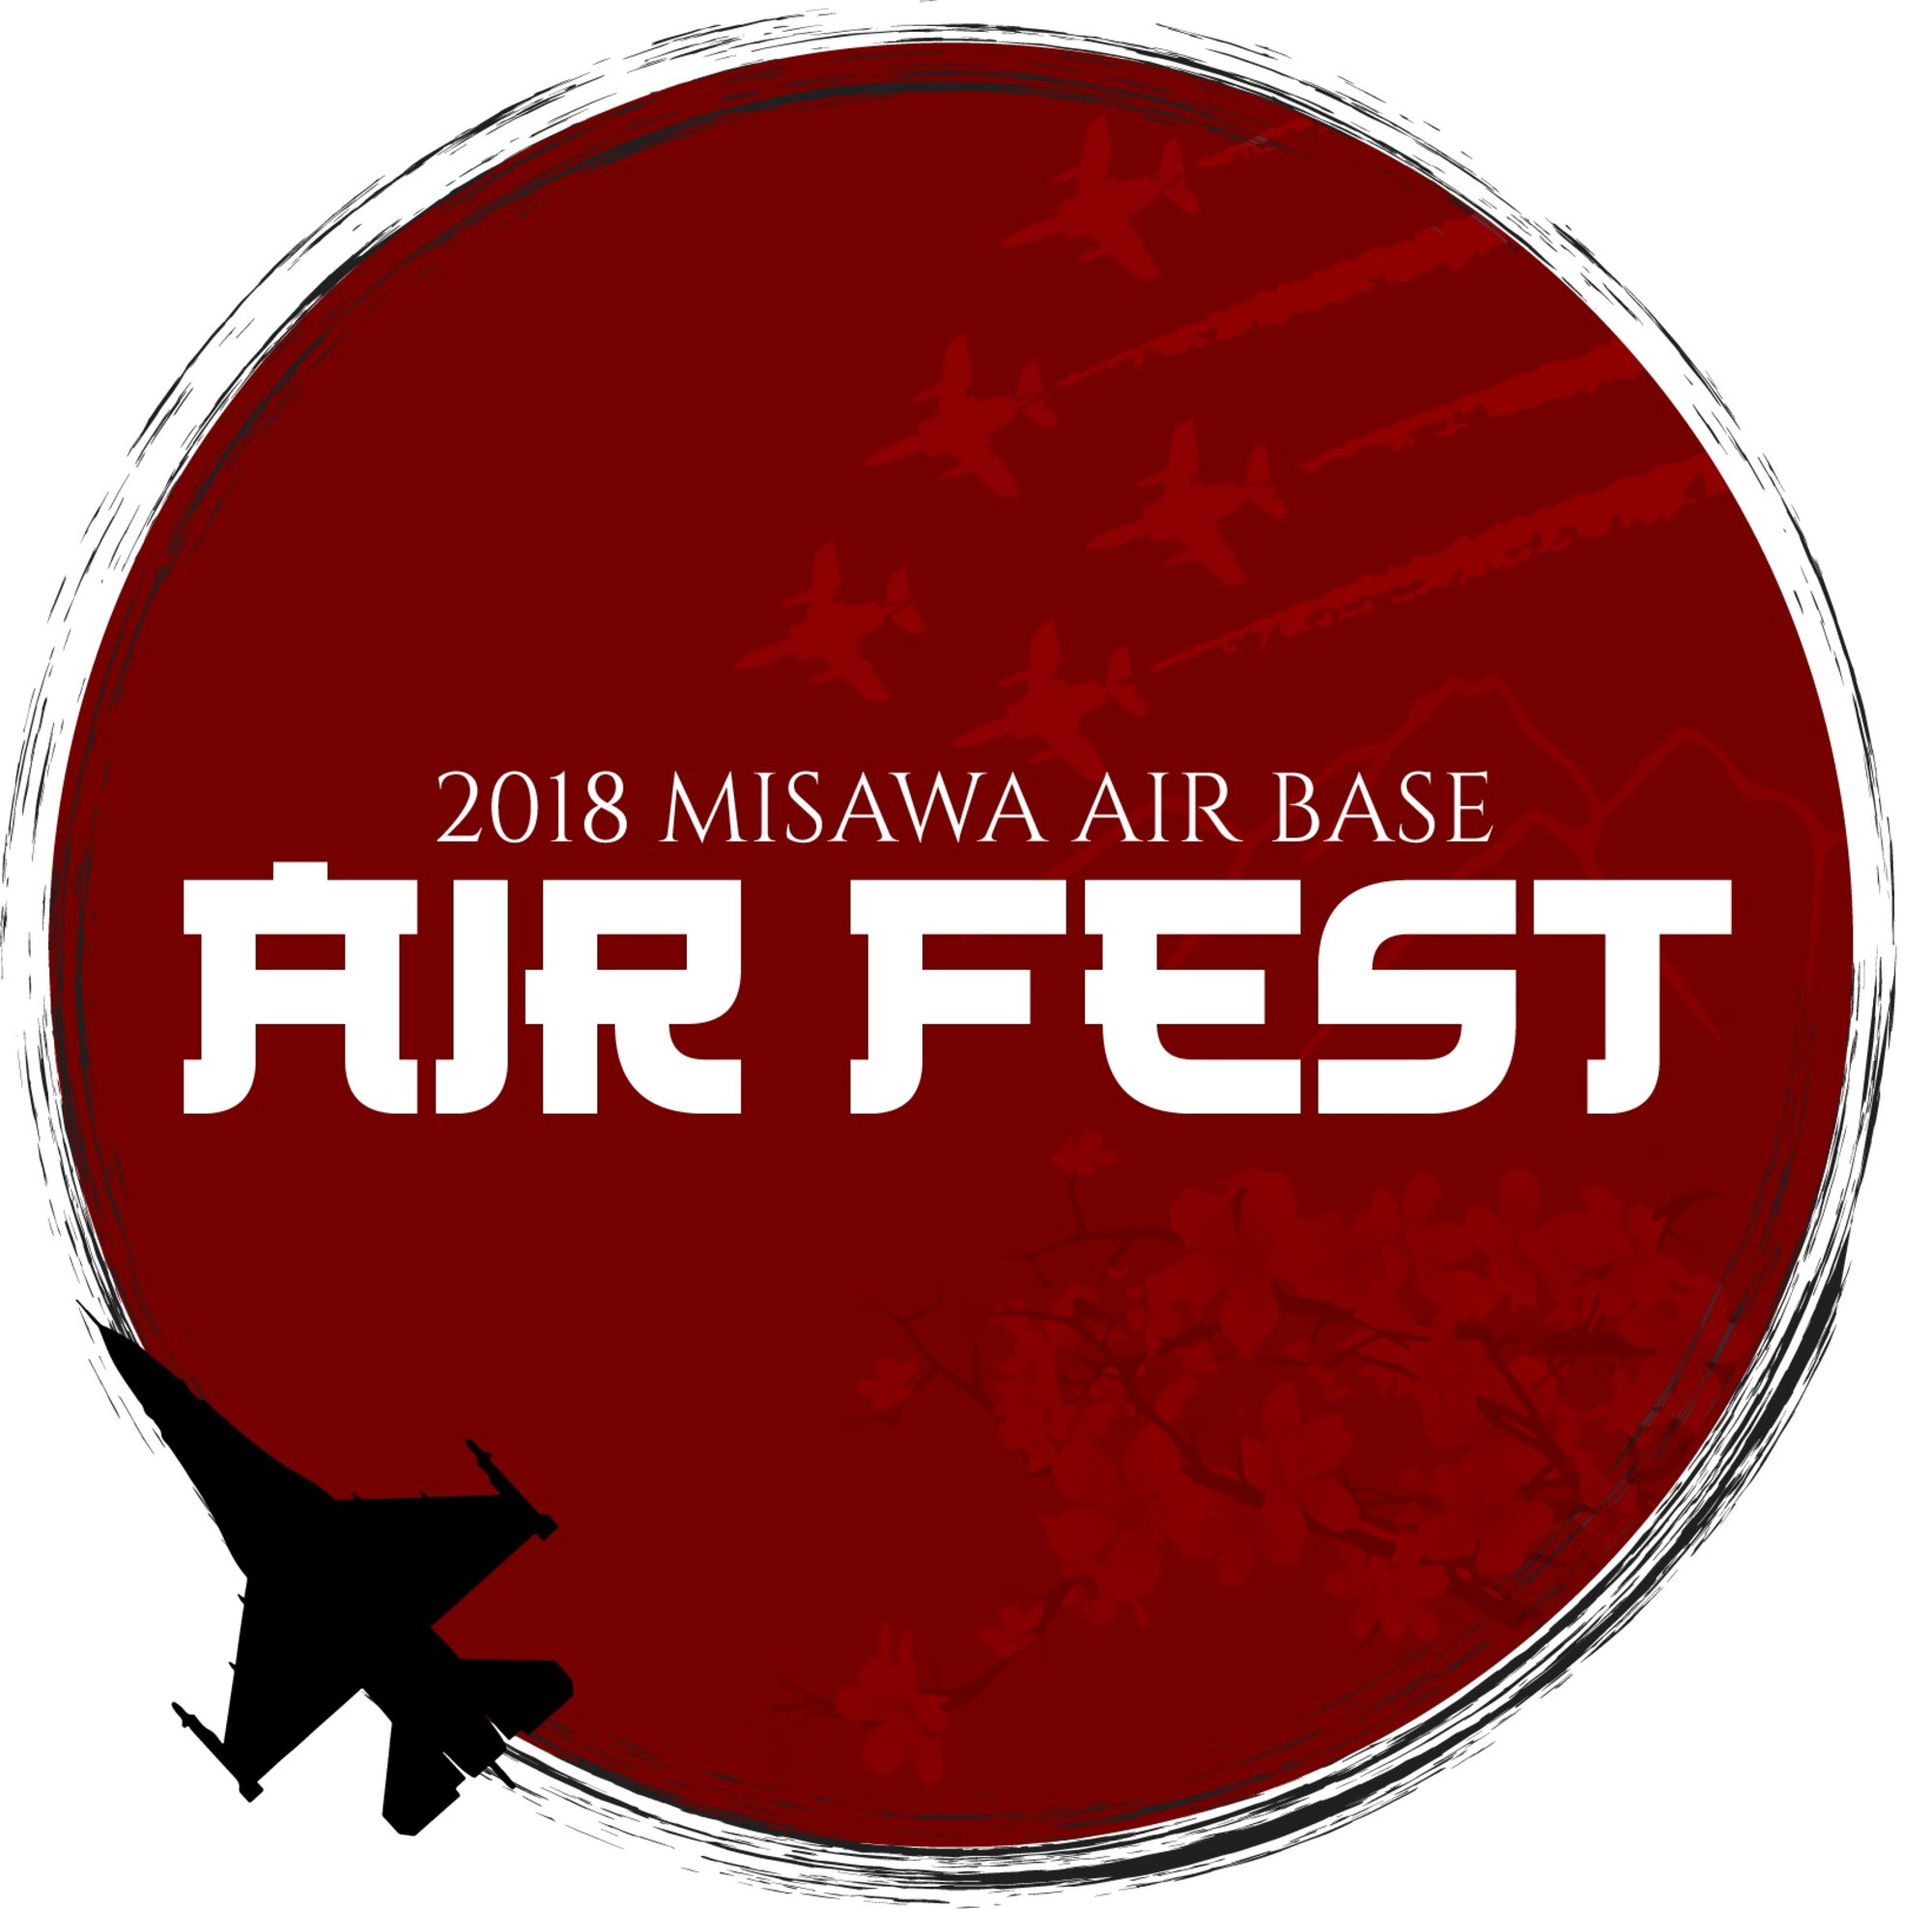 Air Fest 2018 logo